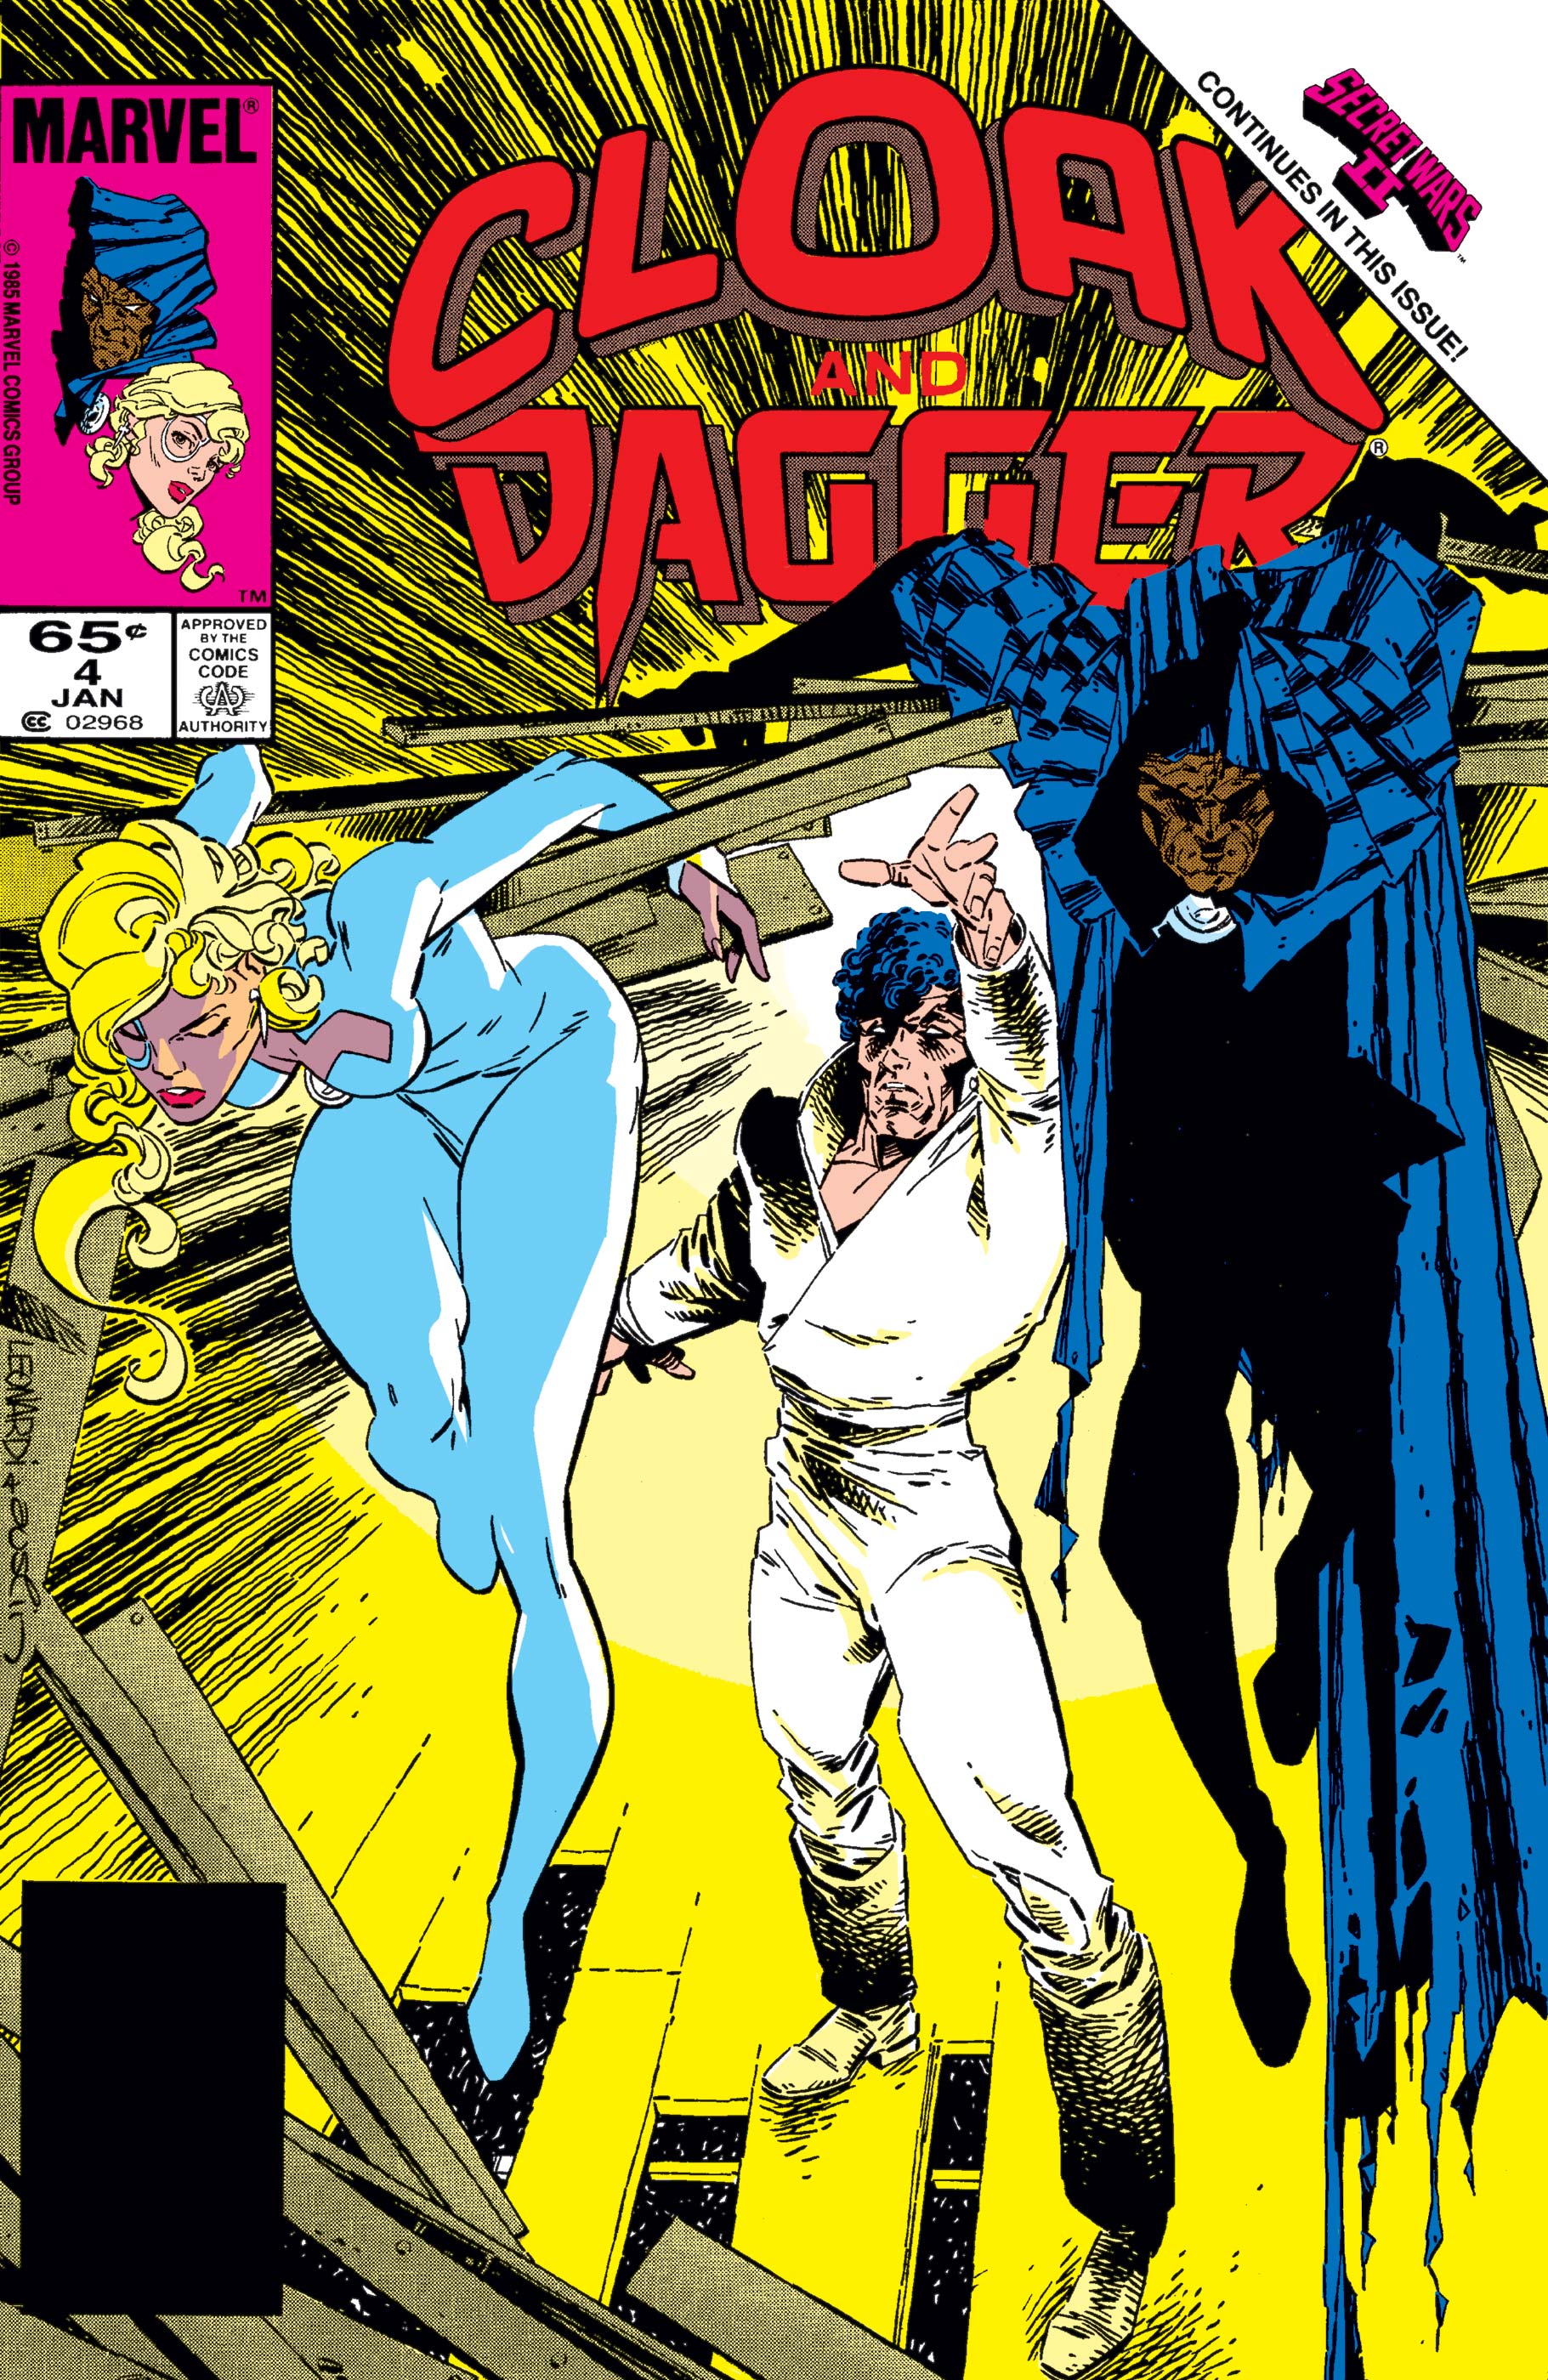 Cloak and Dagger (1985) #4